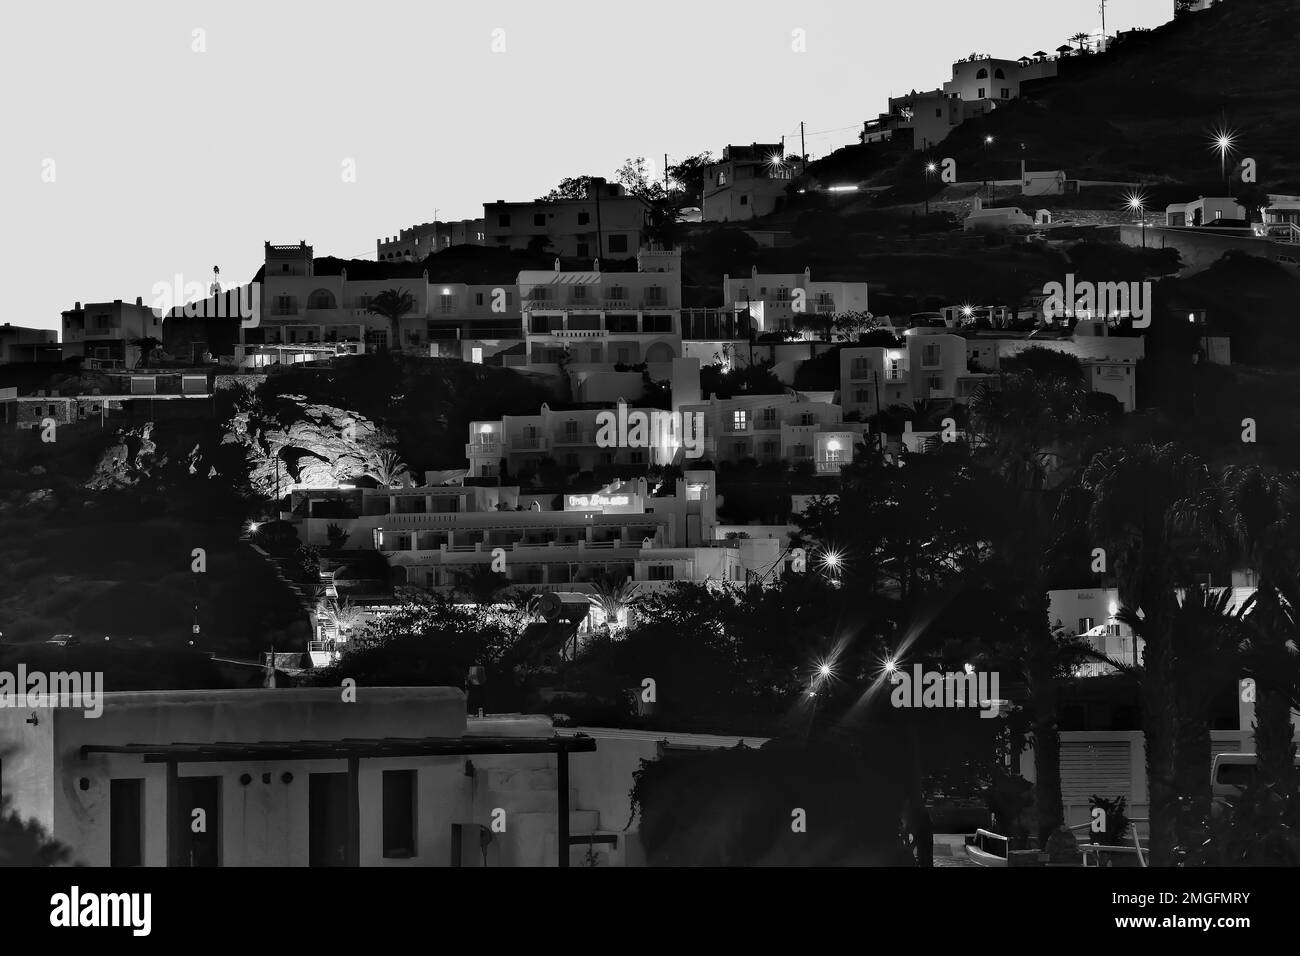 IOS, Grèce - 3 juin 2021 : vue sur de belles chambres d'hôtel et restaurants éclairés donnant sur la mer Égée à Mylopotas iOS Grèce Banque D'Images